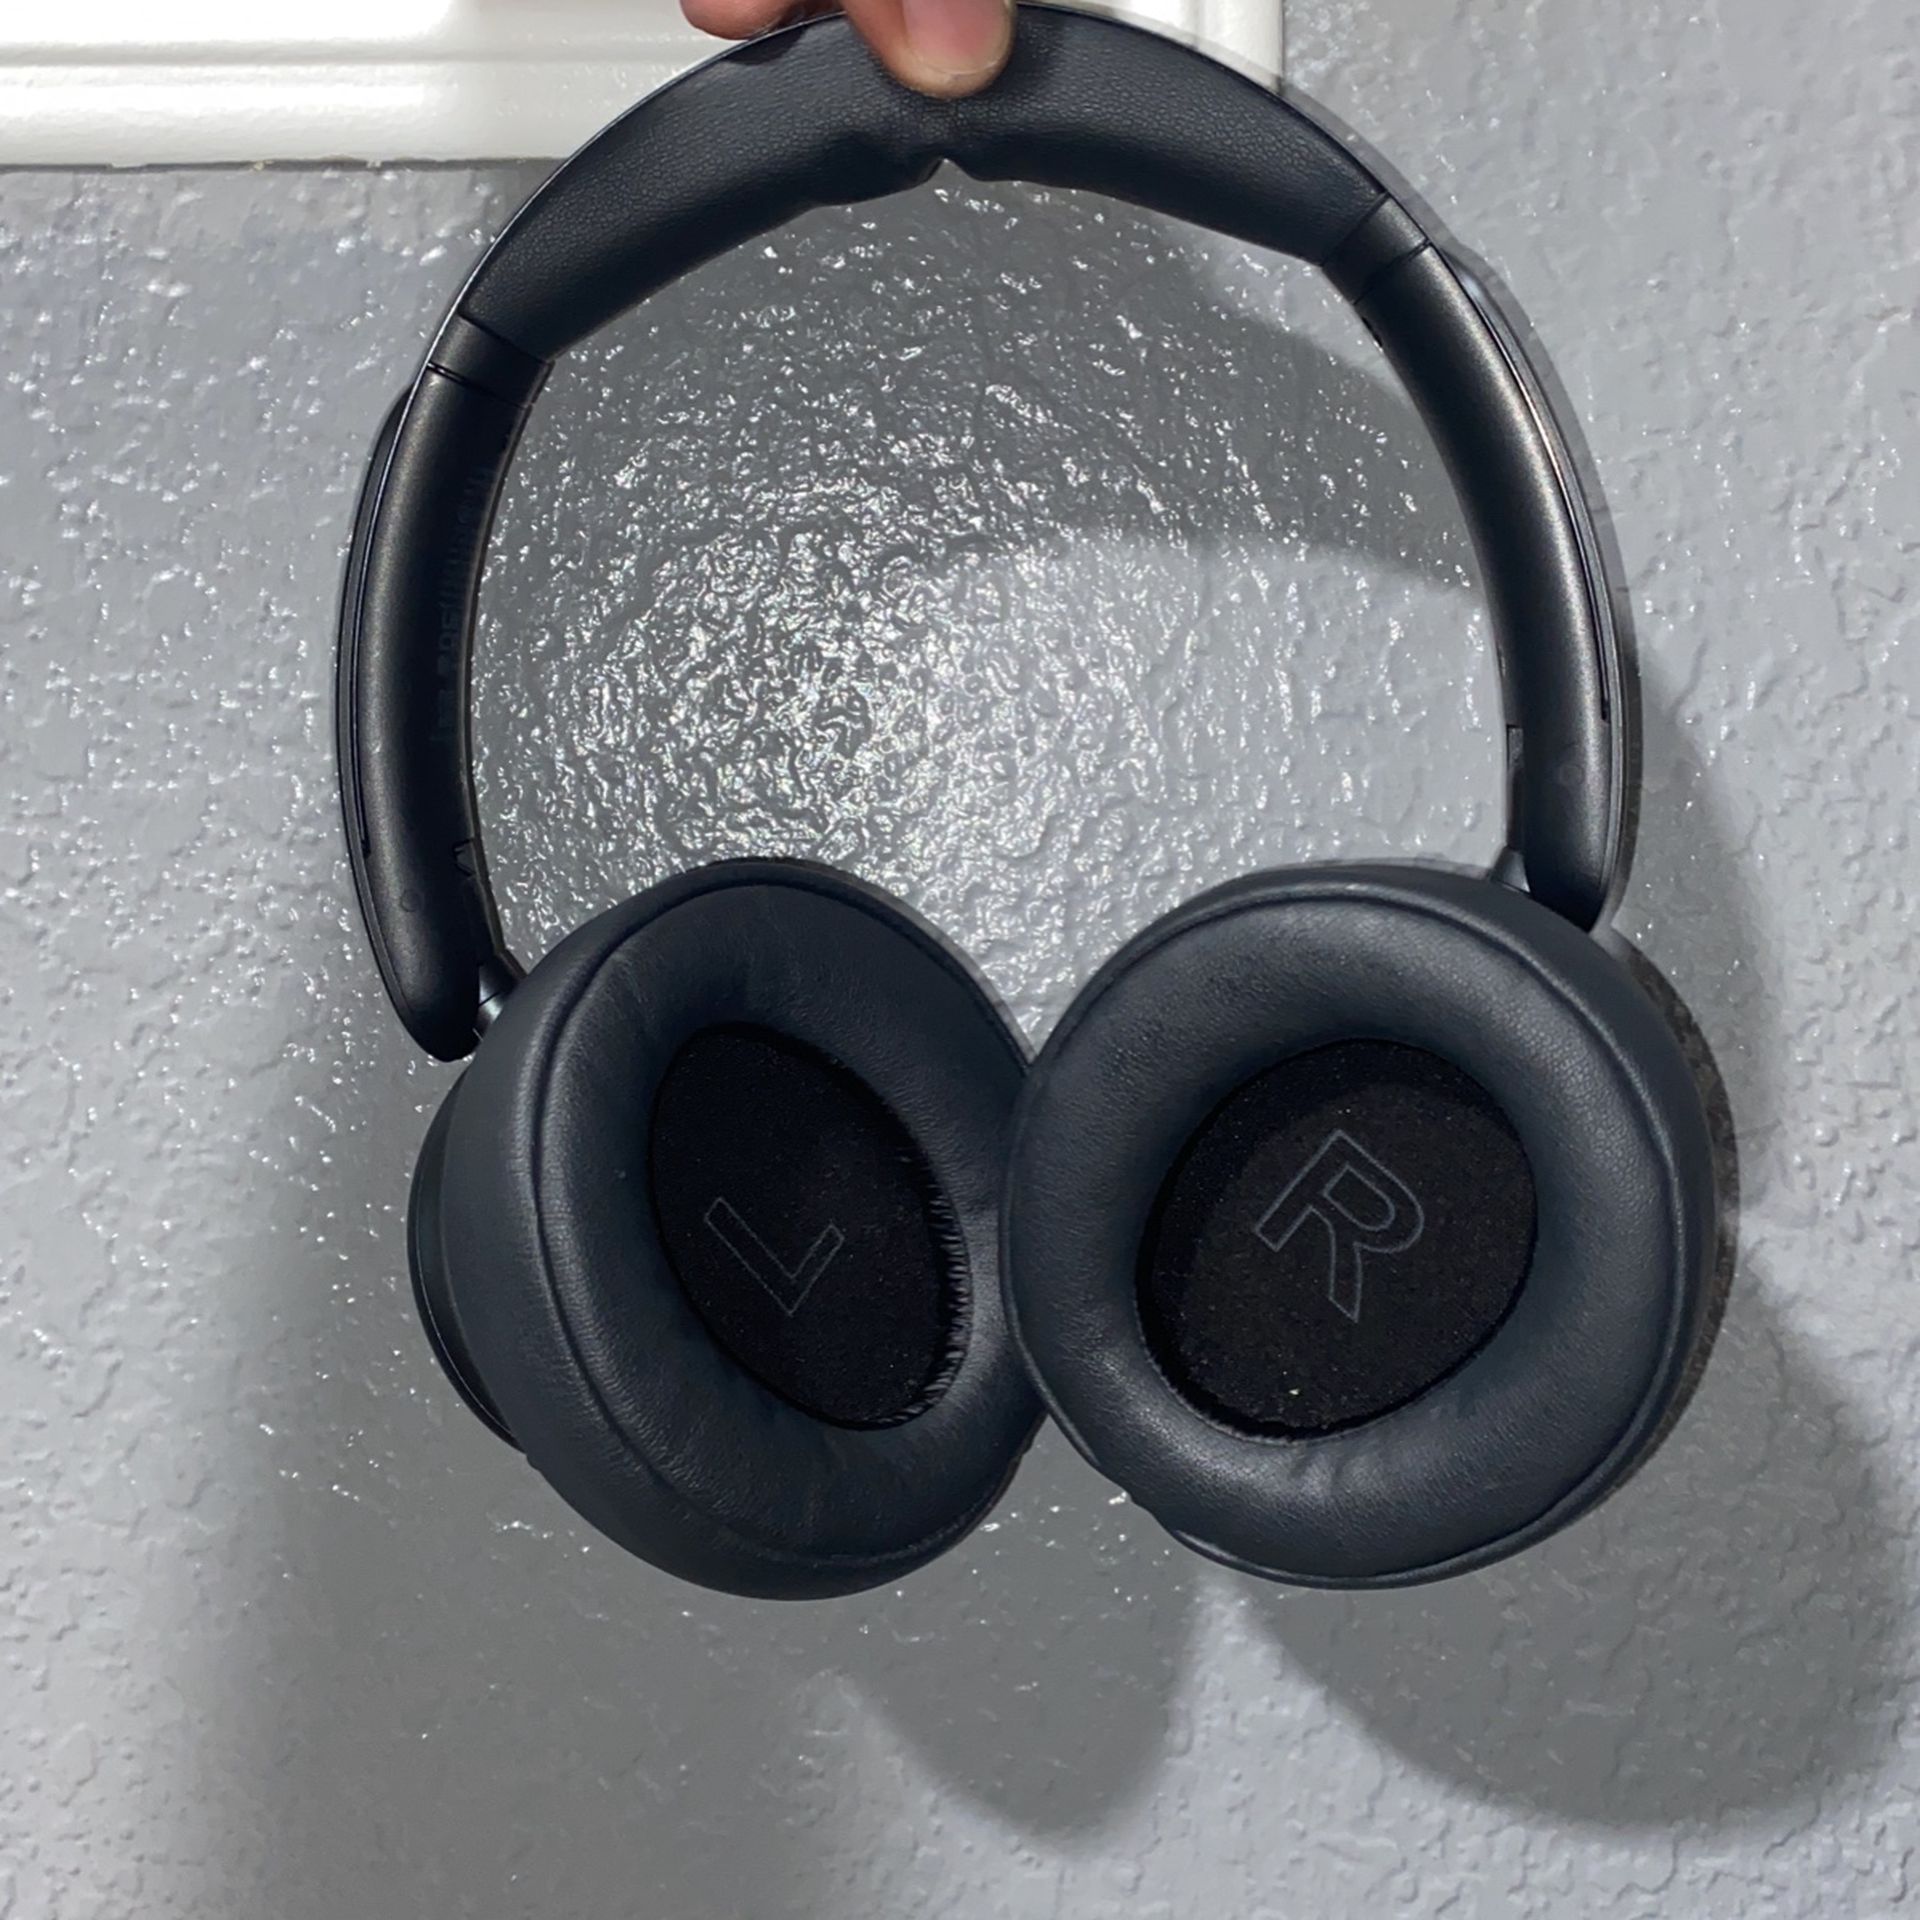 Sound Core Headphones 